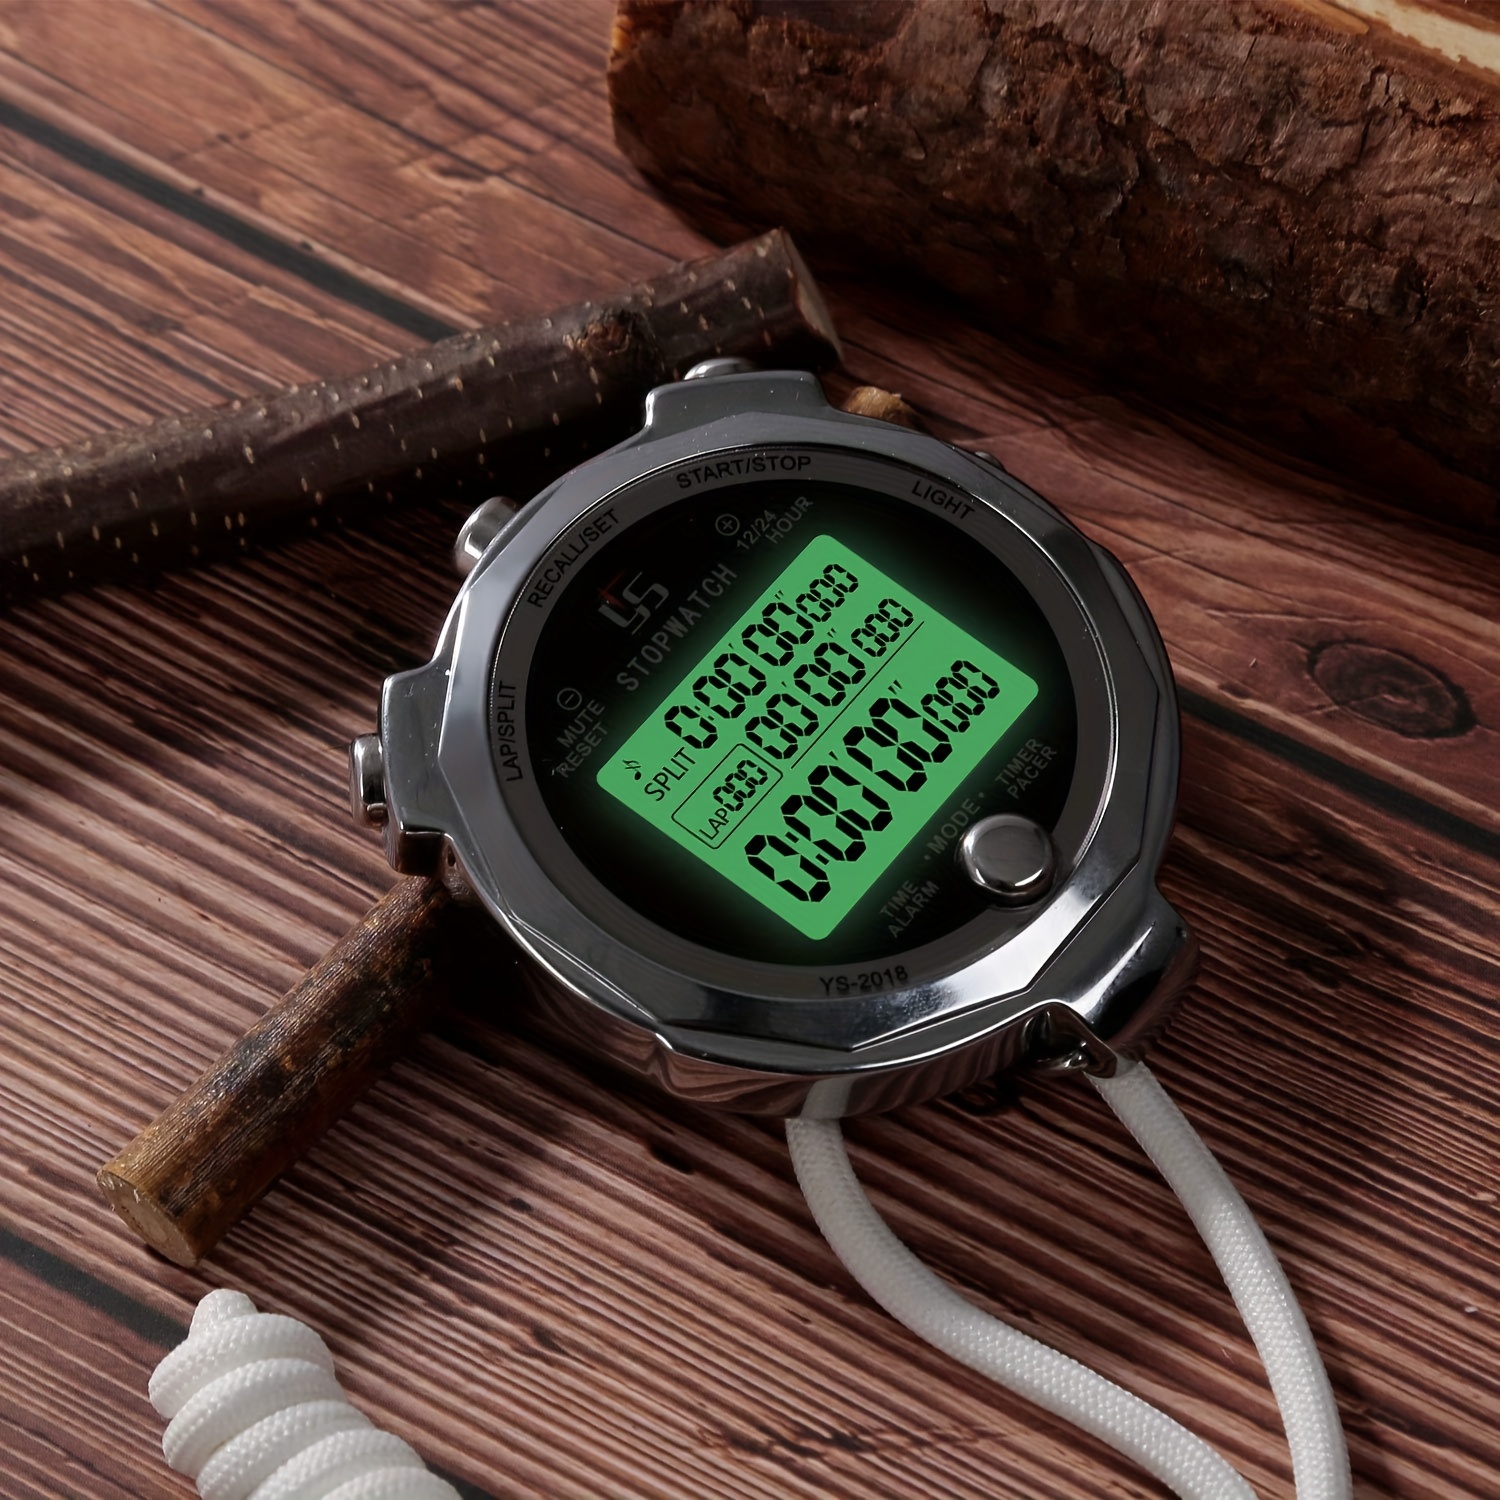 Professionelle digitale Stoppuhr Timer, mit LCD-Display, einfach zu sehen  Zeit und Daten aufzuzeichnen.klein in Volumen, einfach zu tragen.